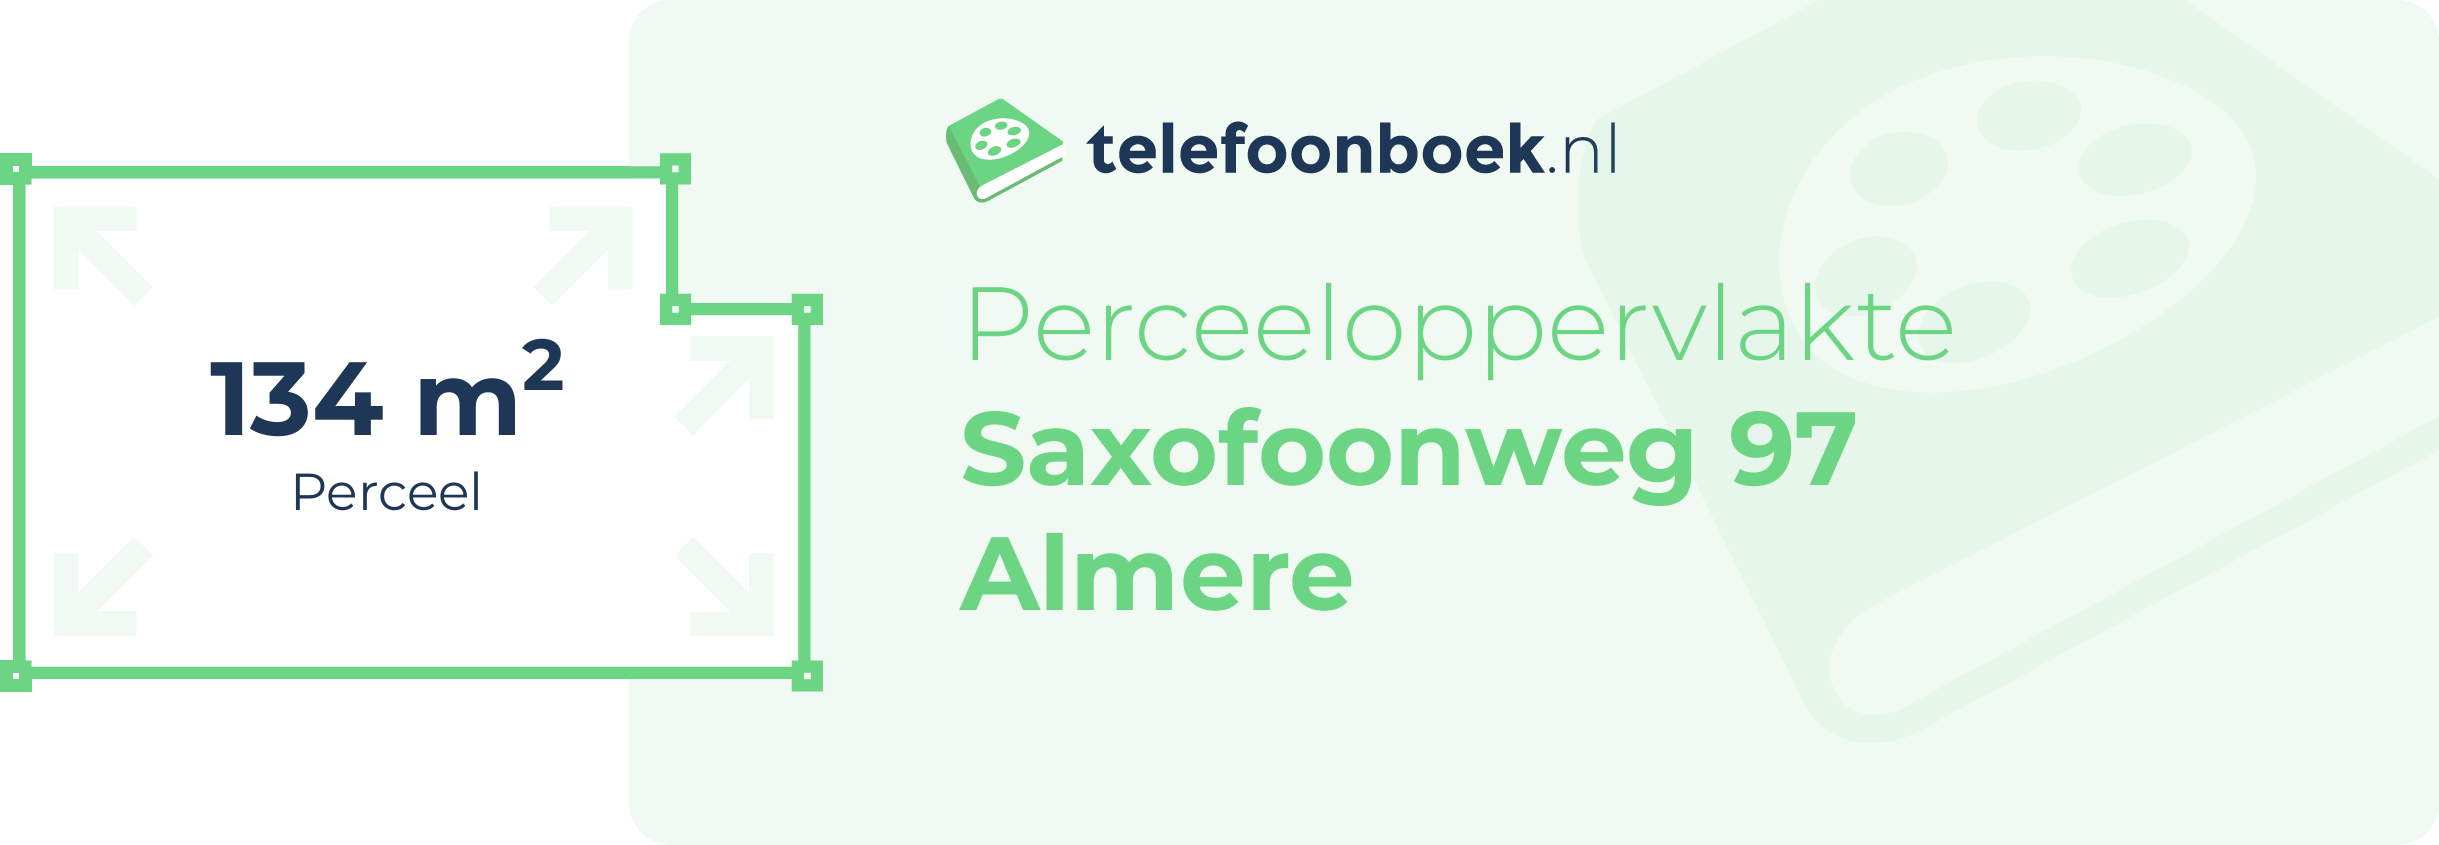 Perceeloppervlakte Saxofoonweg 97 Almere